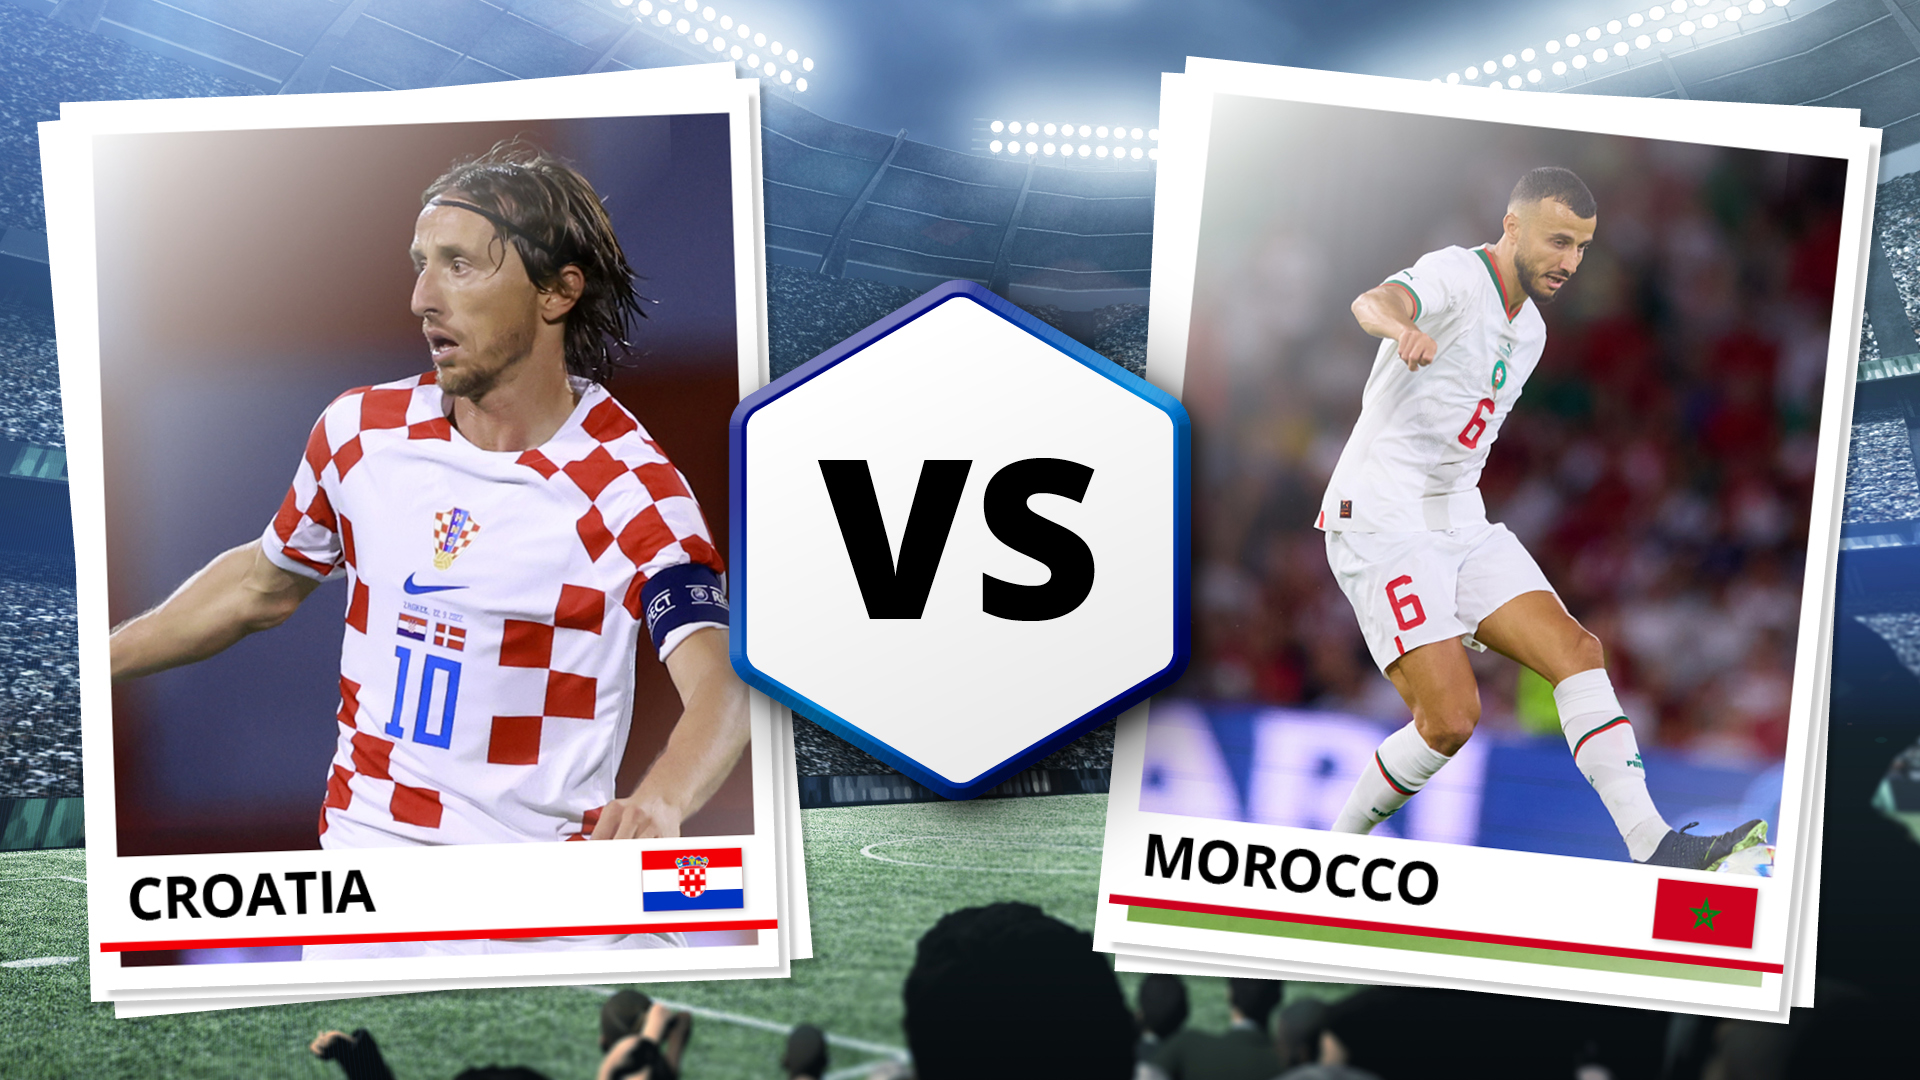 Kroatien gegen Marokko live streamen Du willst einen kostenlosen Livestream zur WM 2022? So gehts! TechRadar